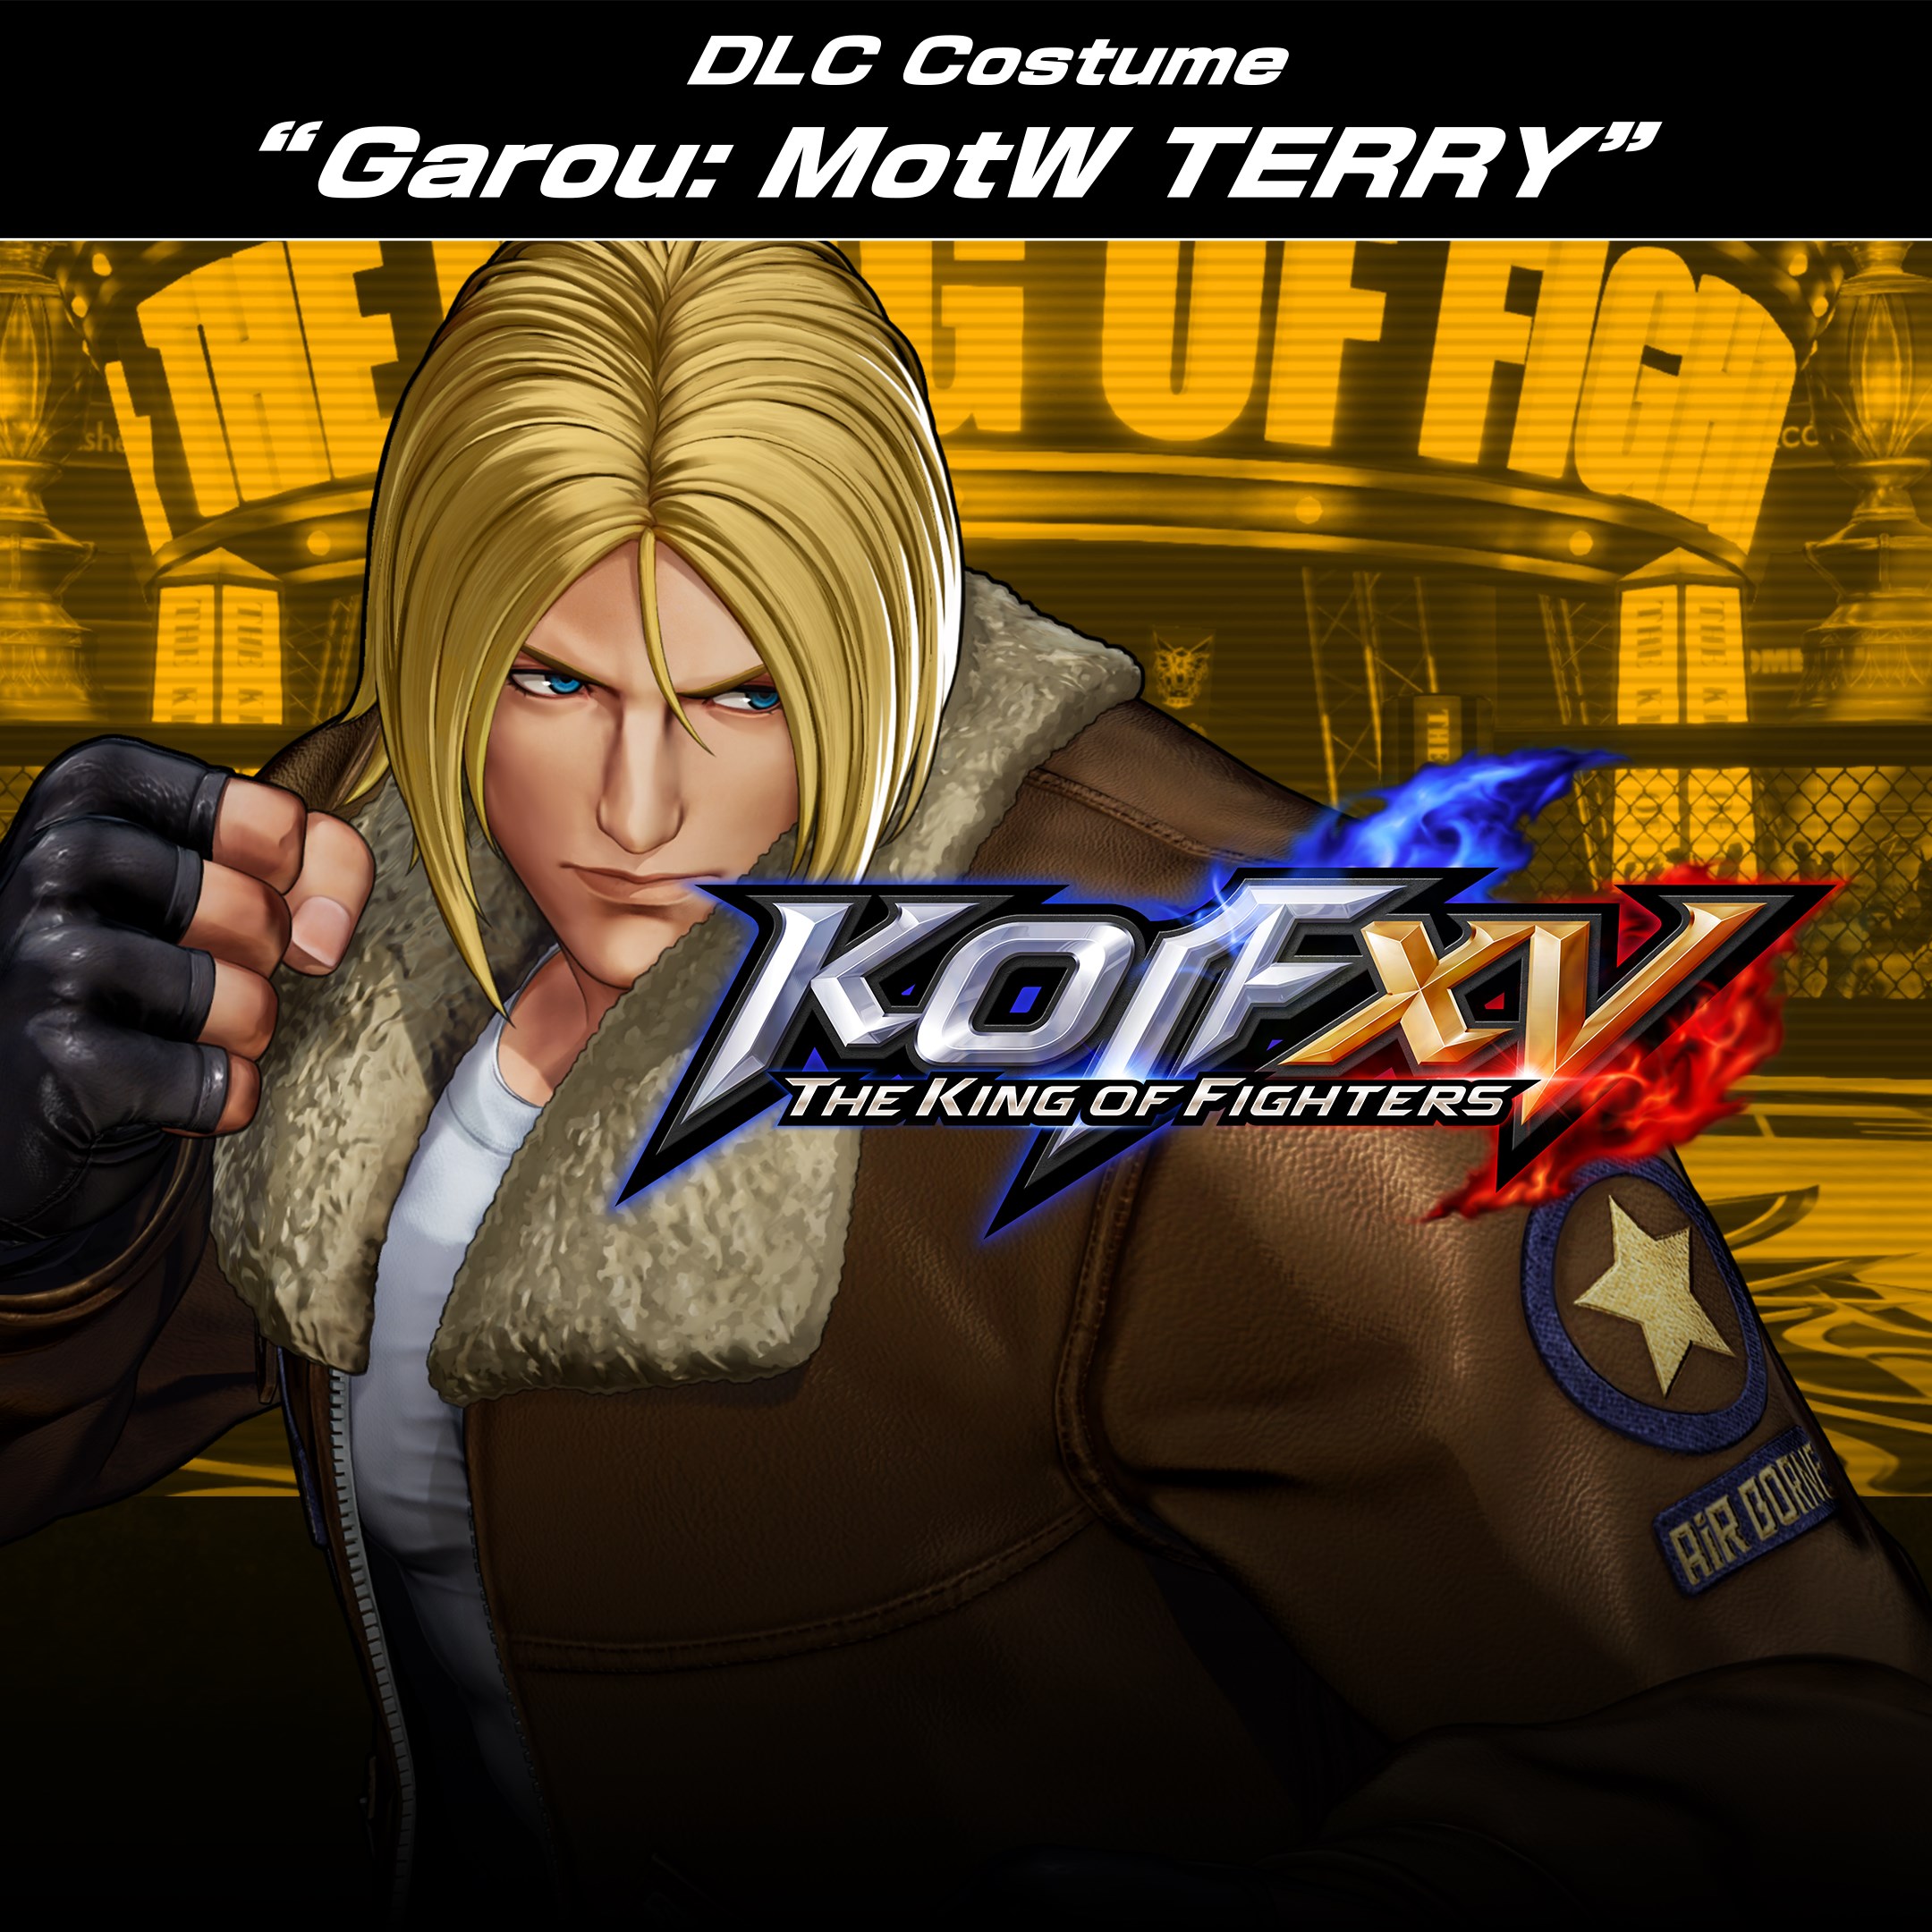 DLC de traje "GAROU: MotW TERRY" para KOF XV